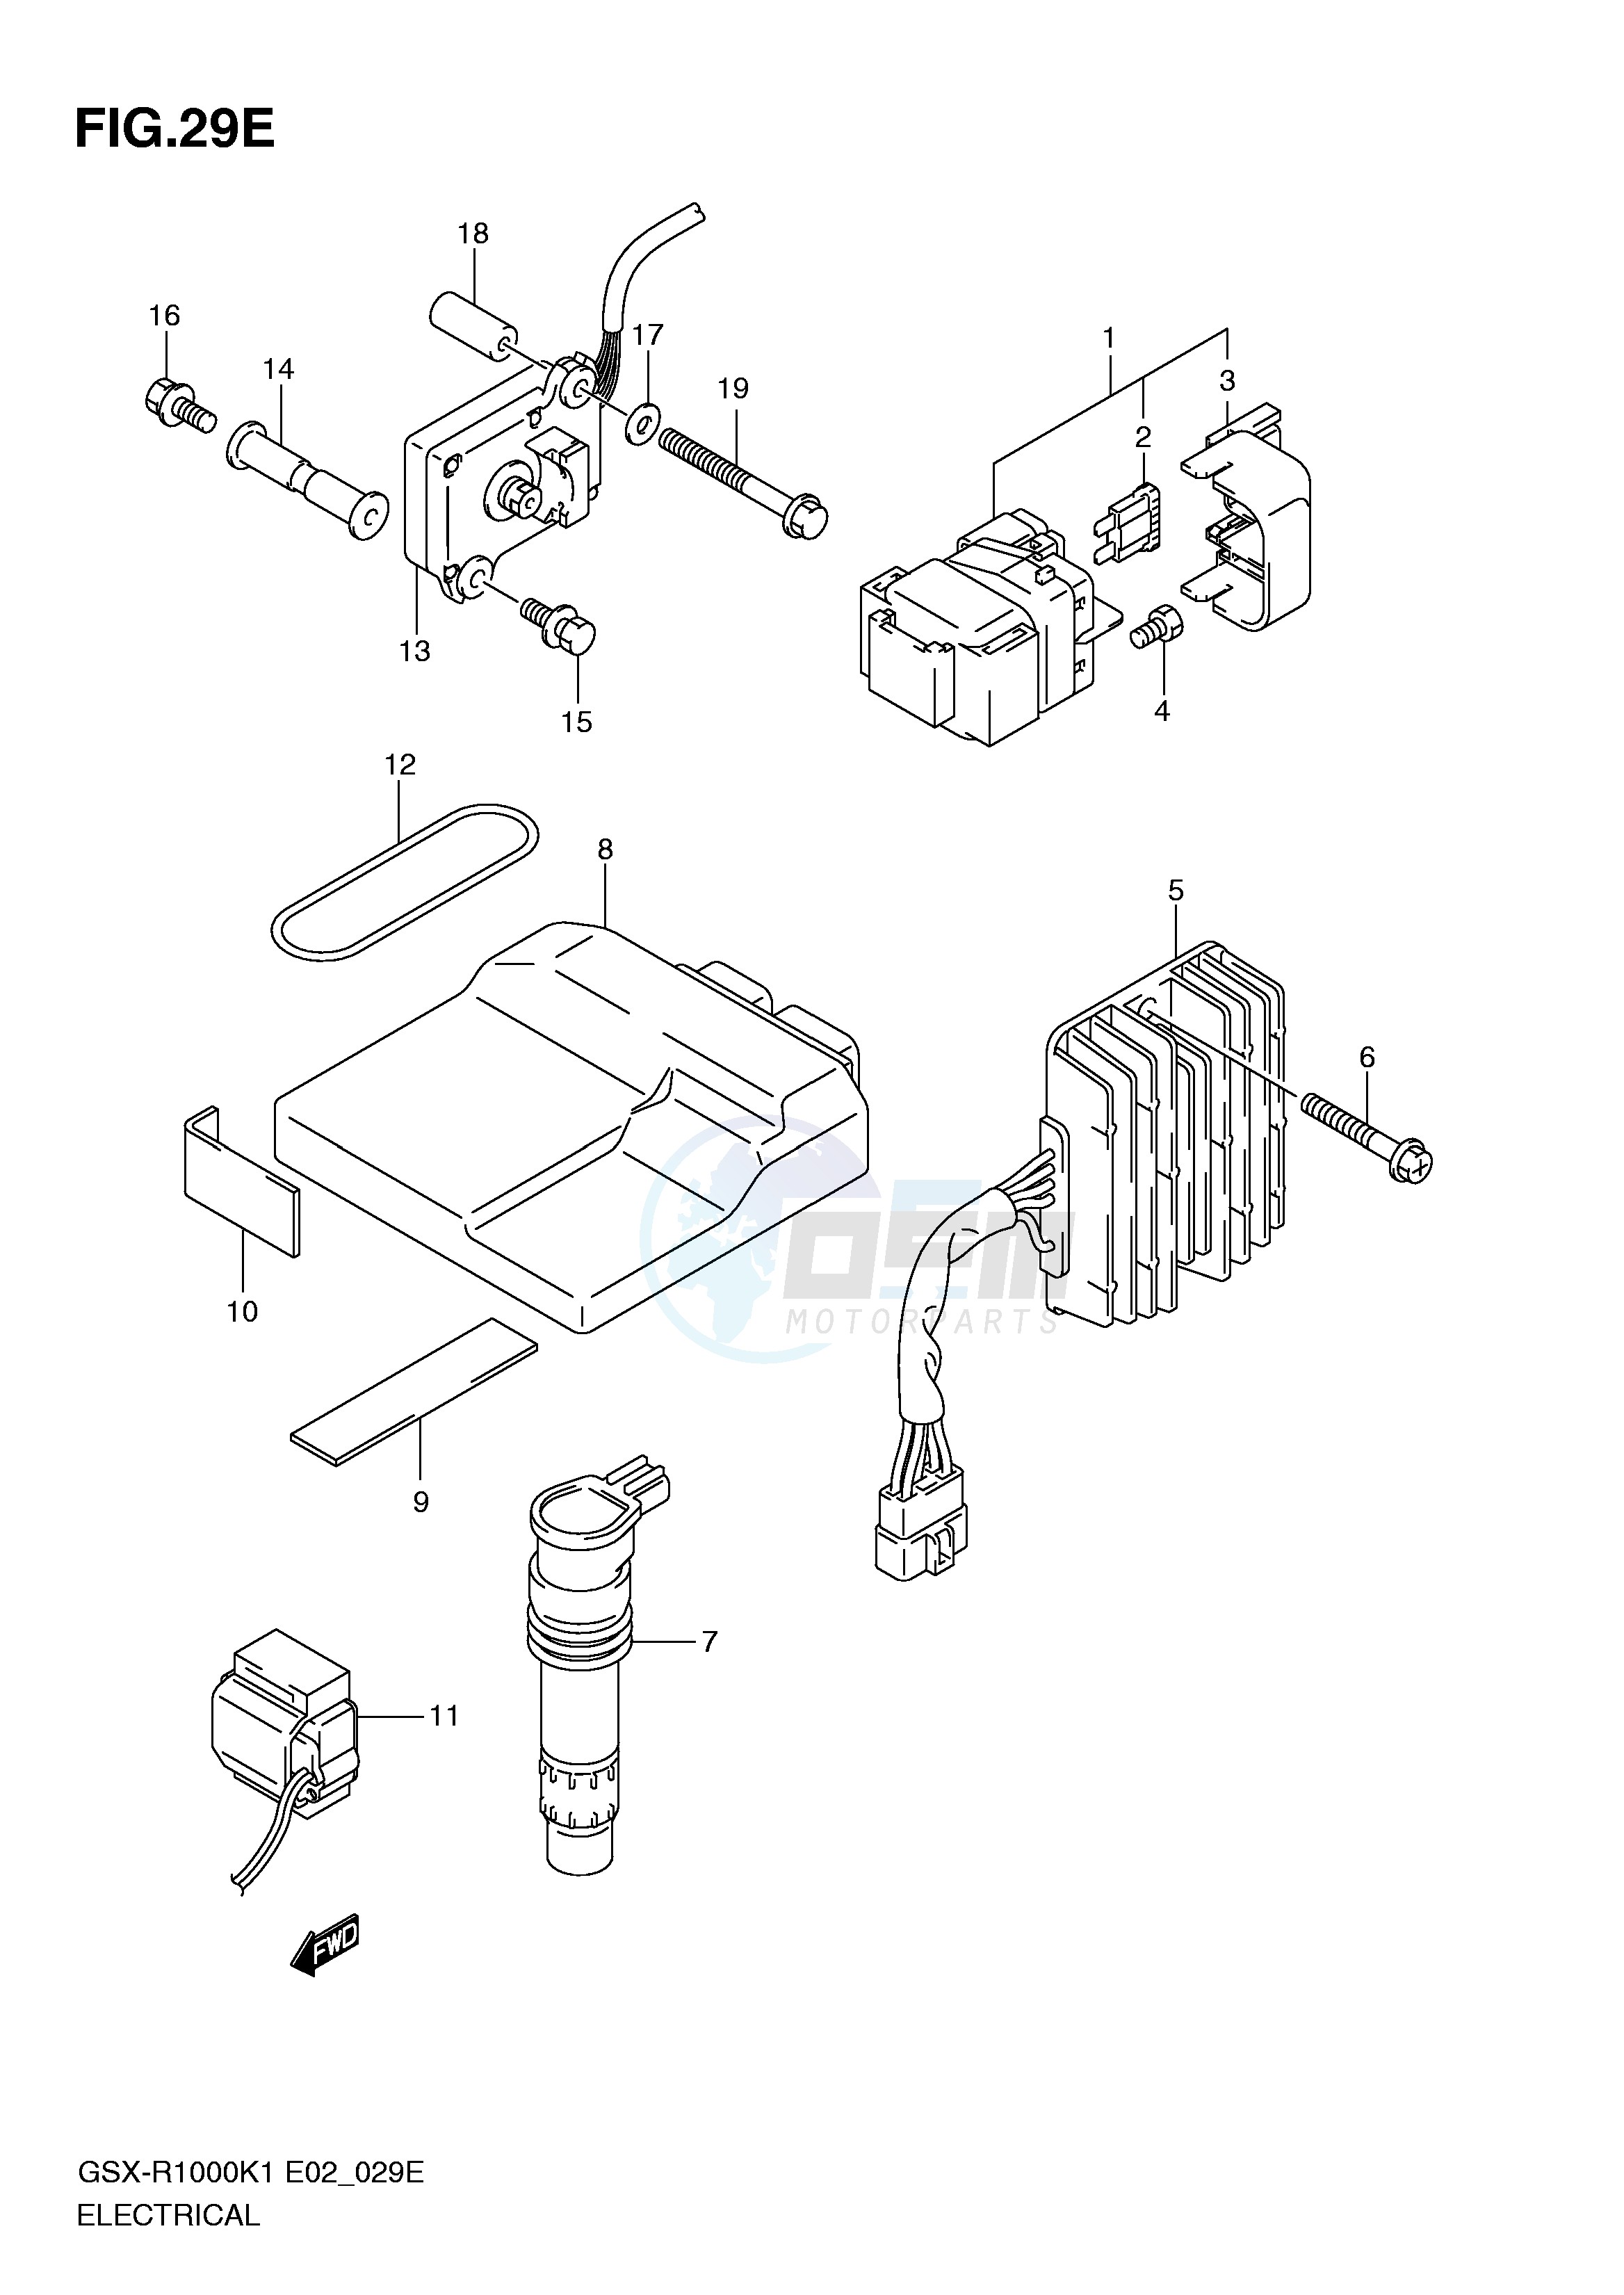 ELECTRICAL (GSX-R1000K2 E19,U1E19,U2E19) blueprint